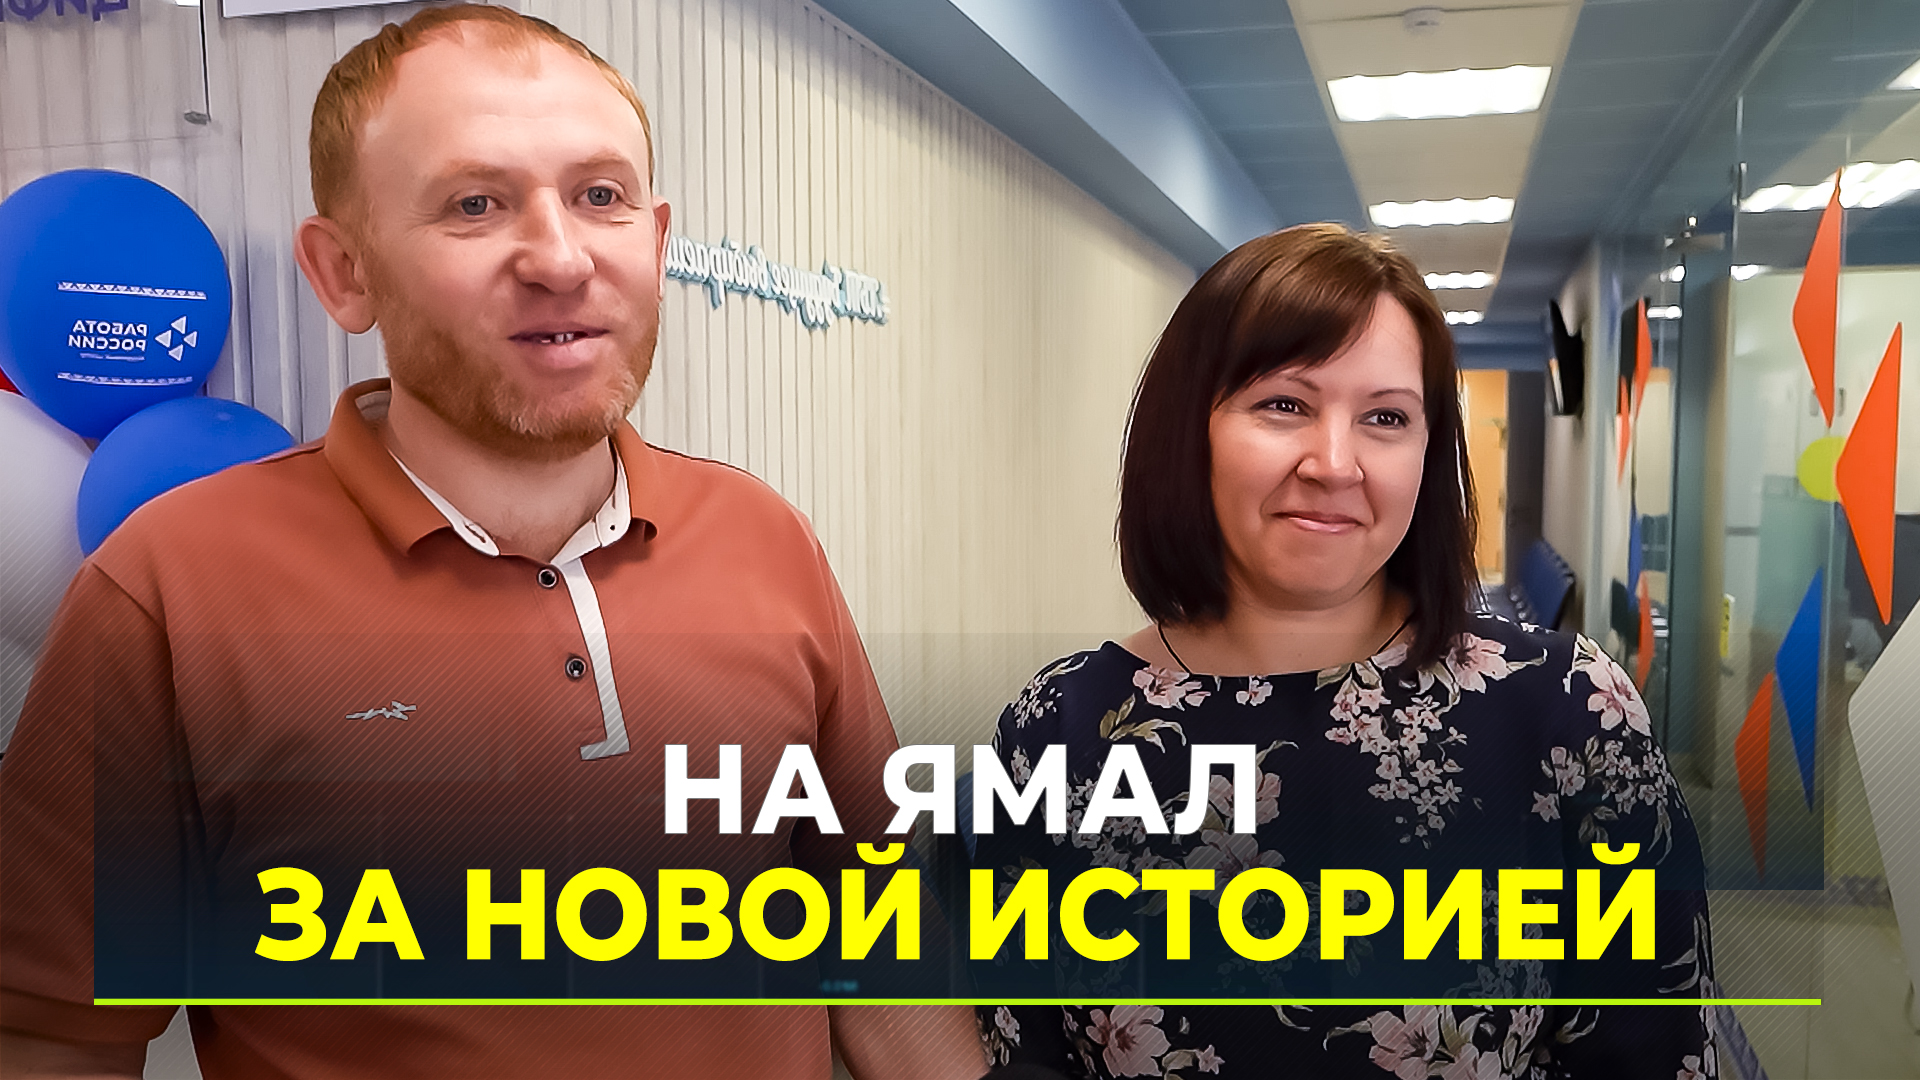 Проект службы занятости на Ямале помог семье из Белгорода трудоустроиться в округе